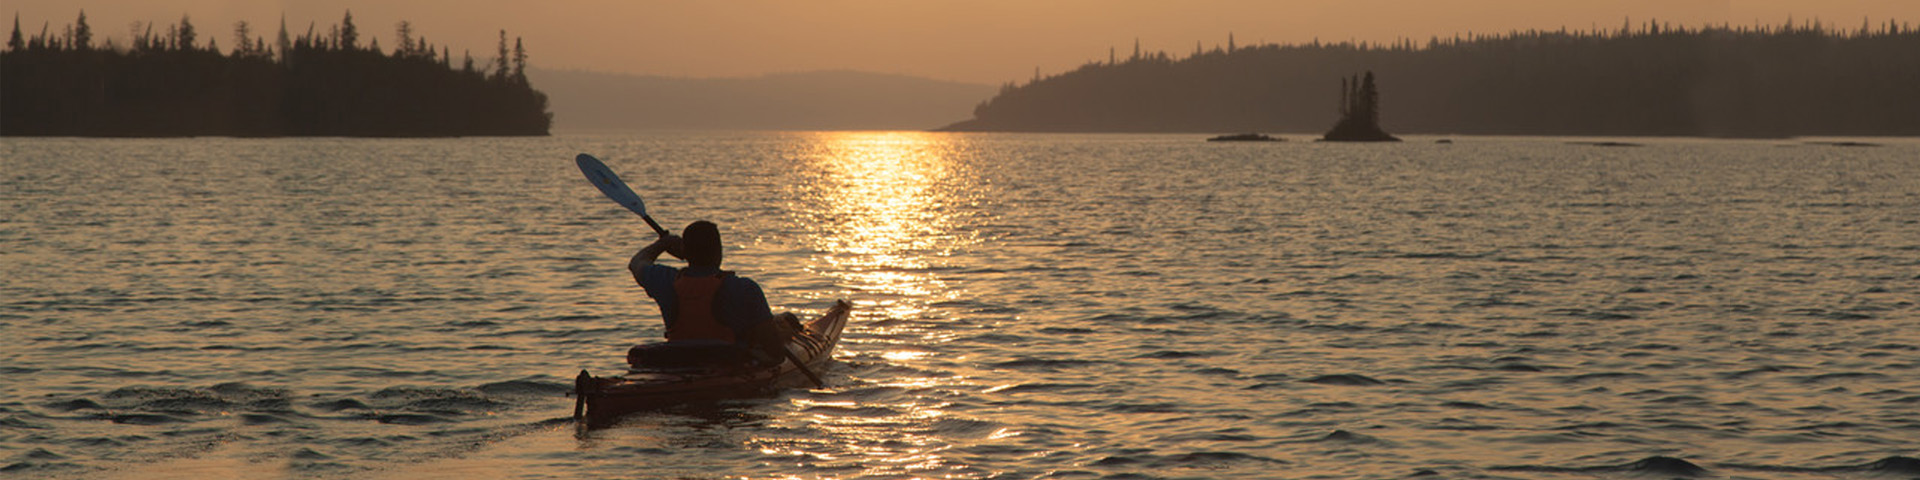 Une personne sur un kayak au coucher du soleil sur le lac Supérieur.